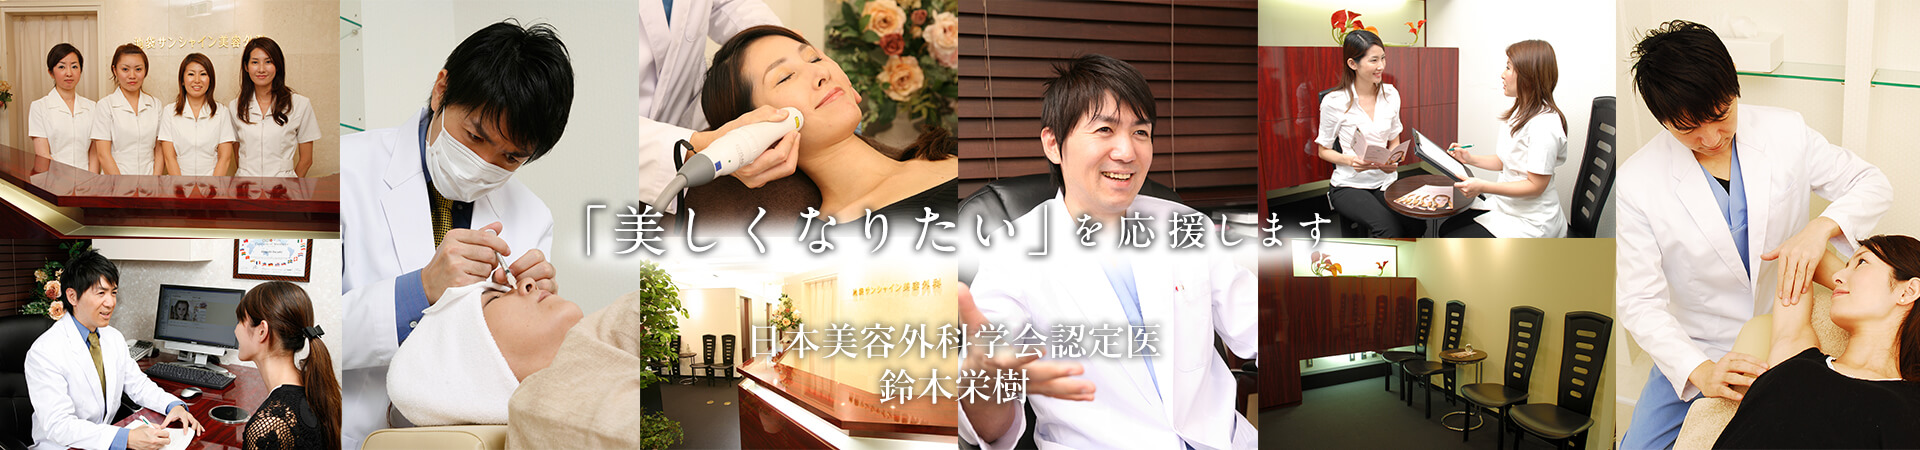 公式 池袋サンシャイン美容外科 東京 池袋の美容整形 美容皮膚科なら当院へ